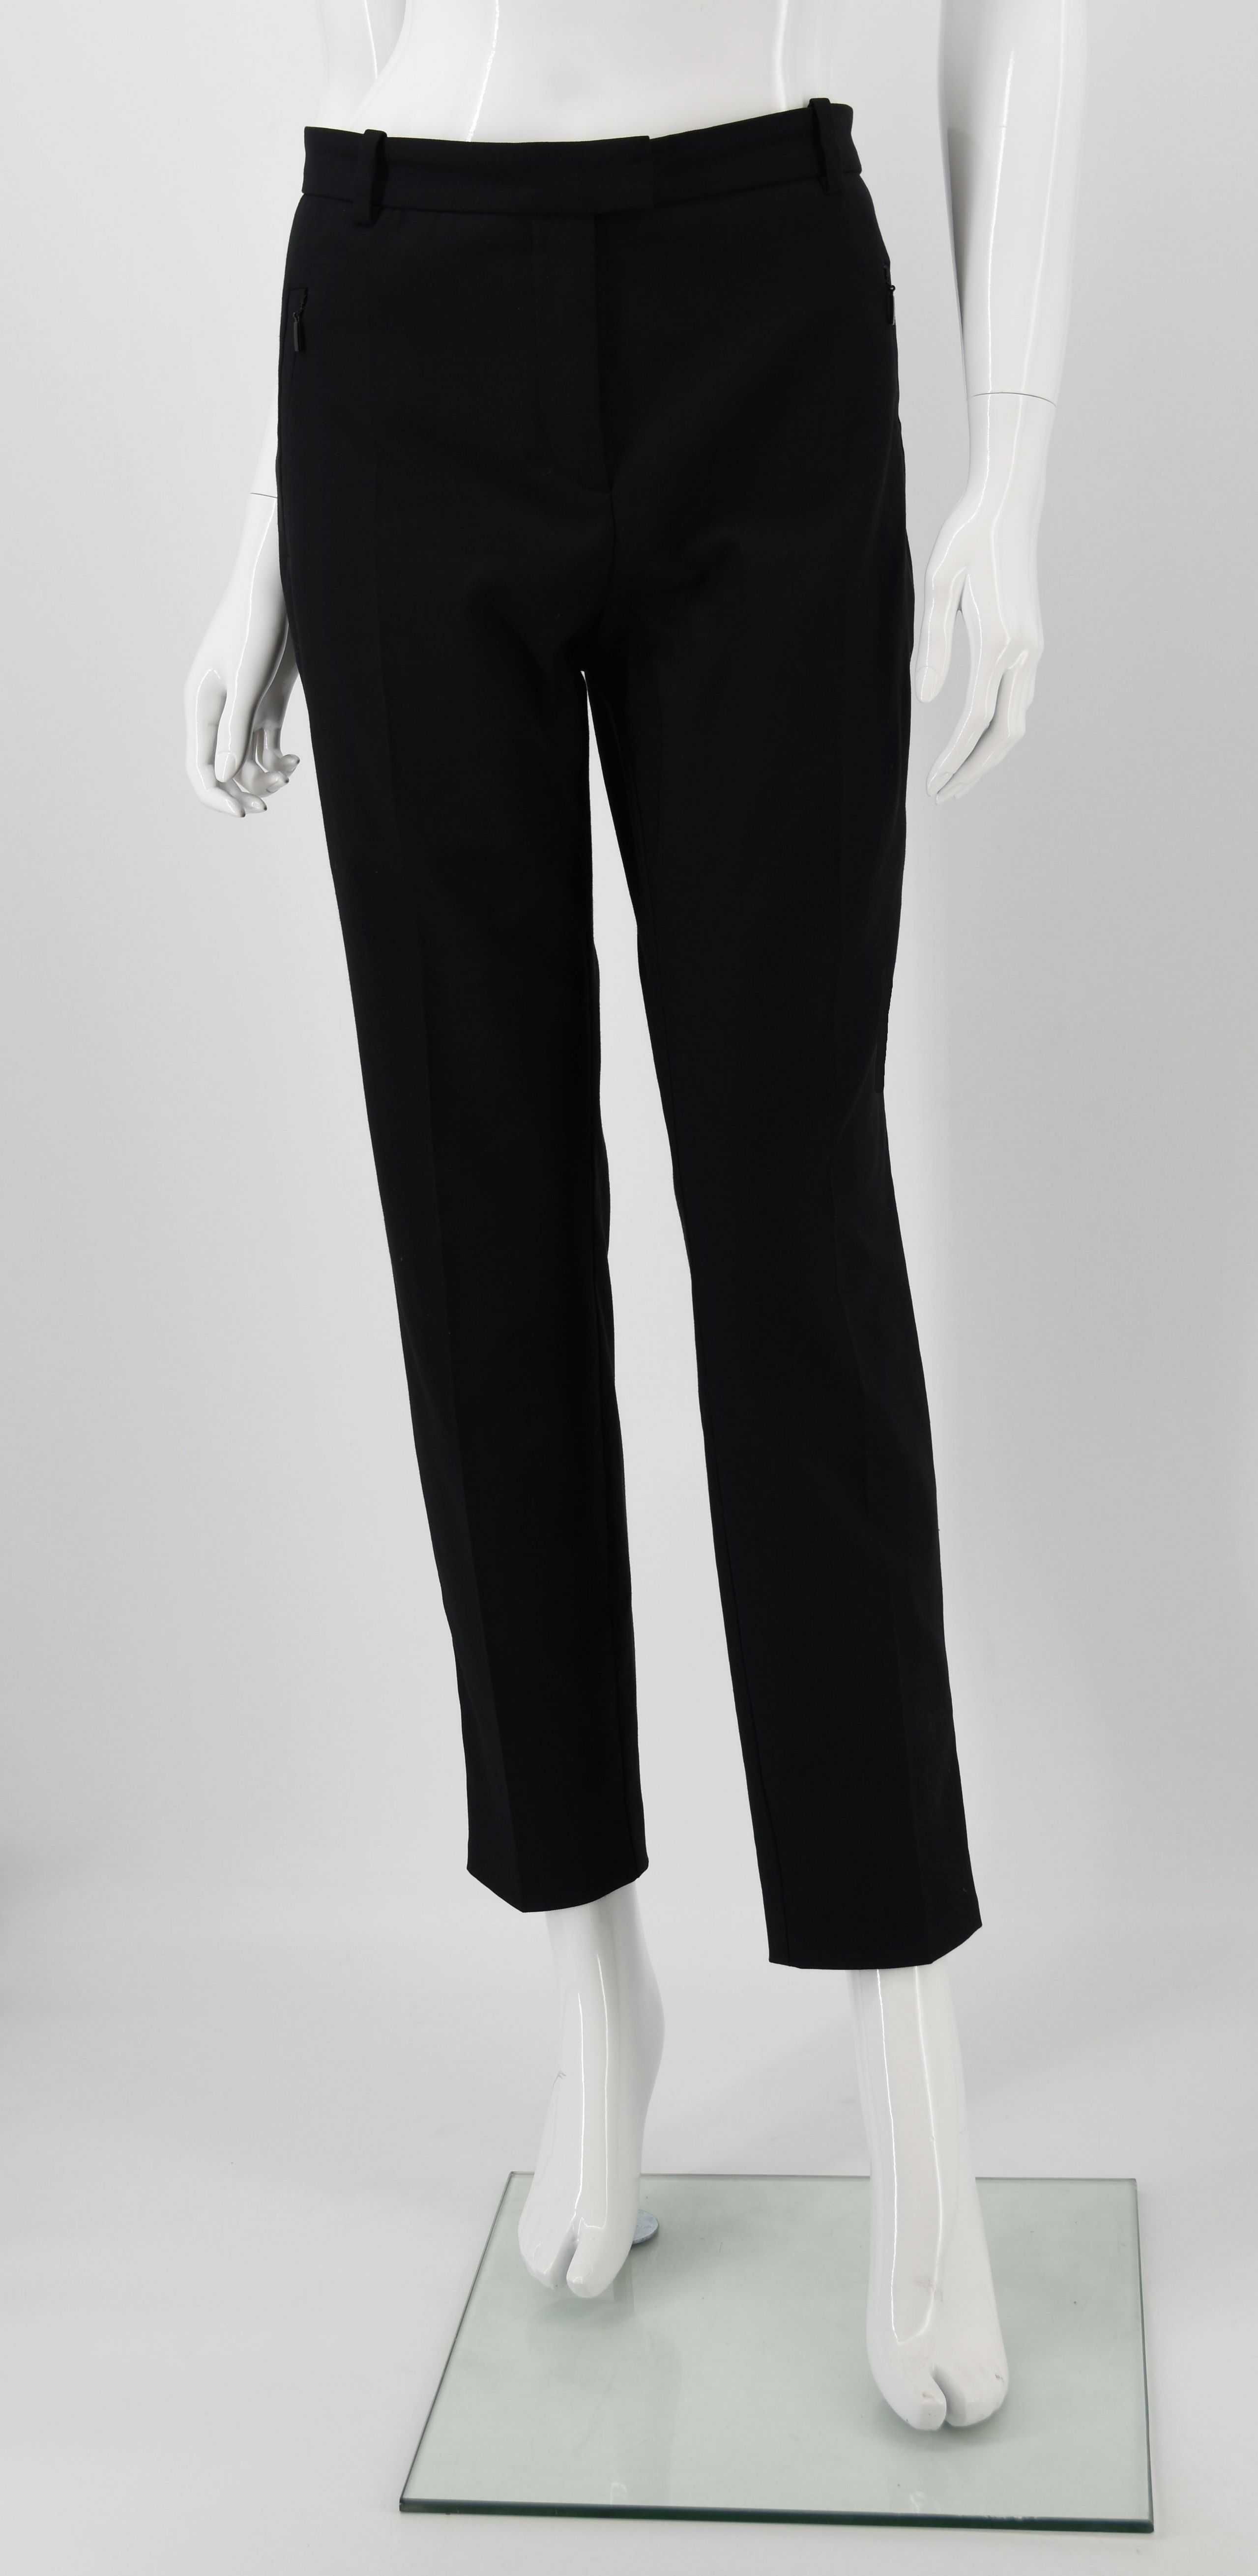 HUGO BOSS spodnie damskie czarne eleganckie cygaretki materiałowe 44